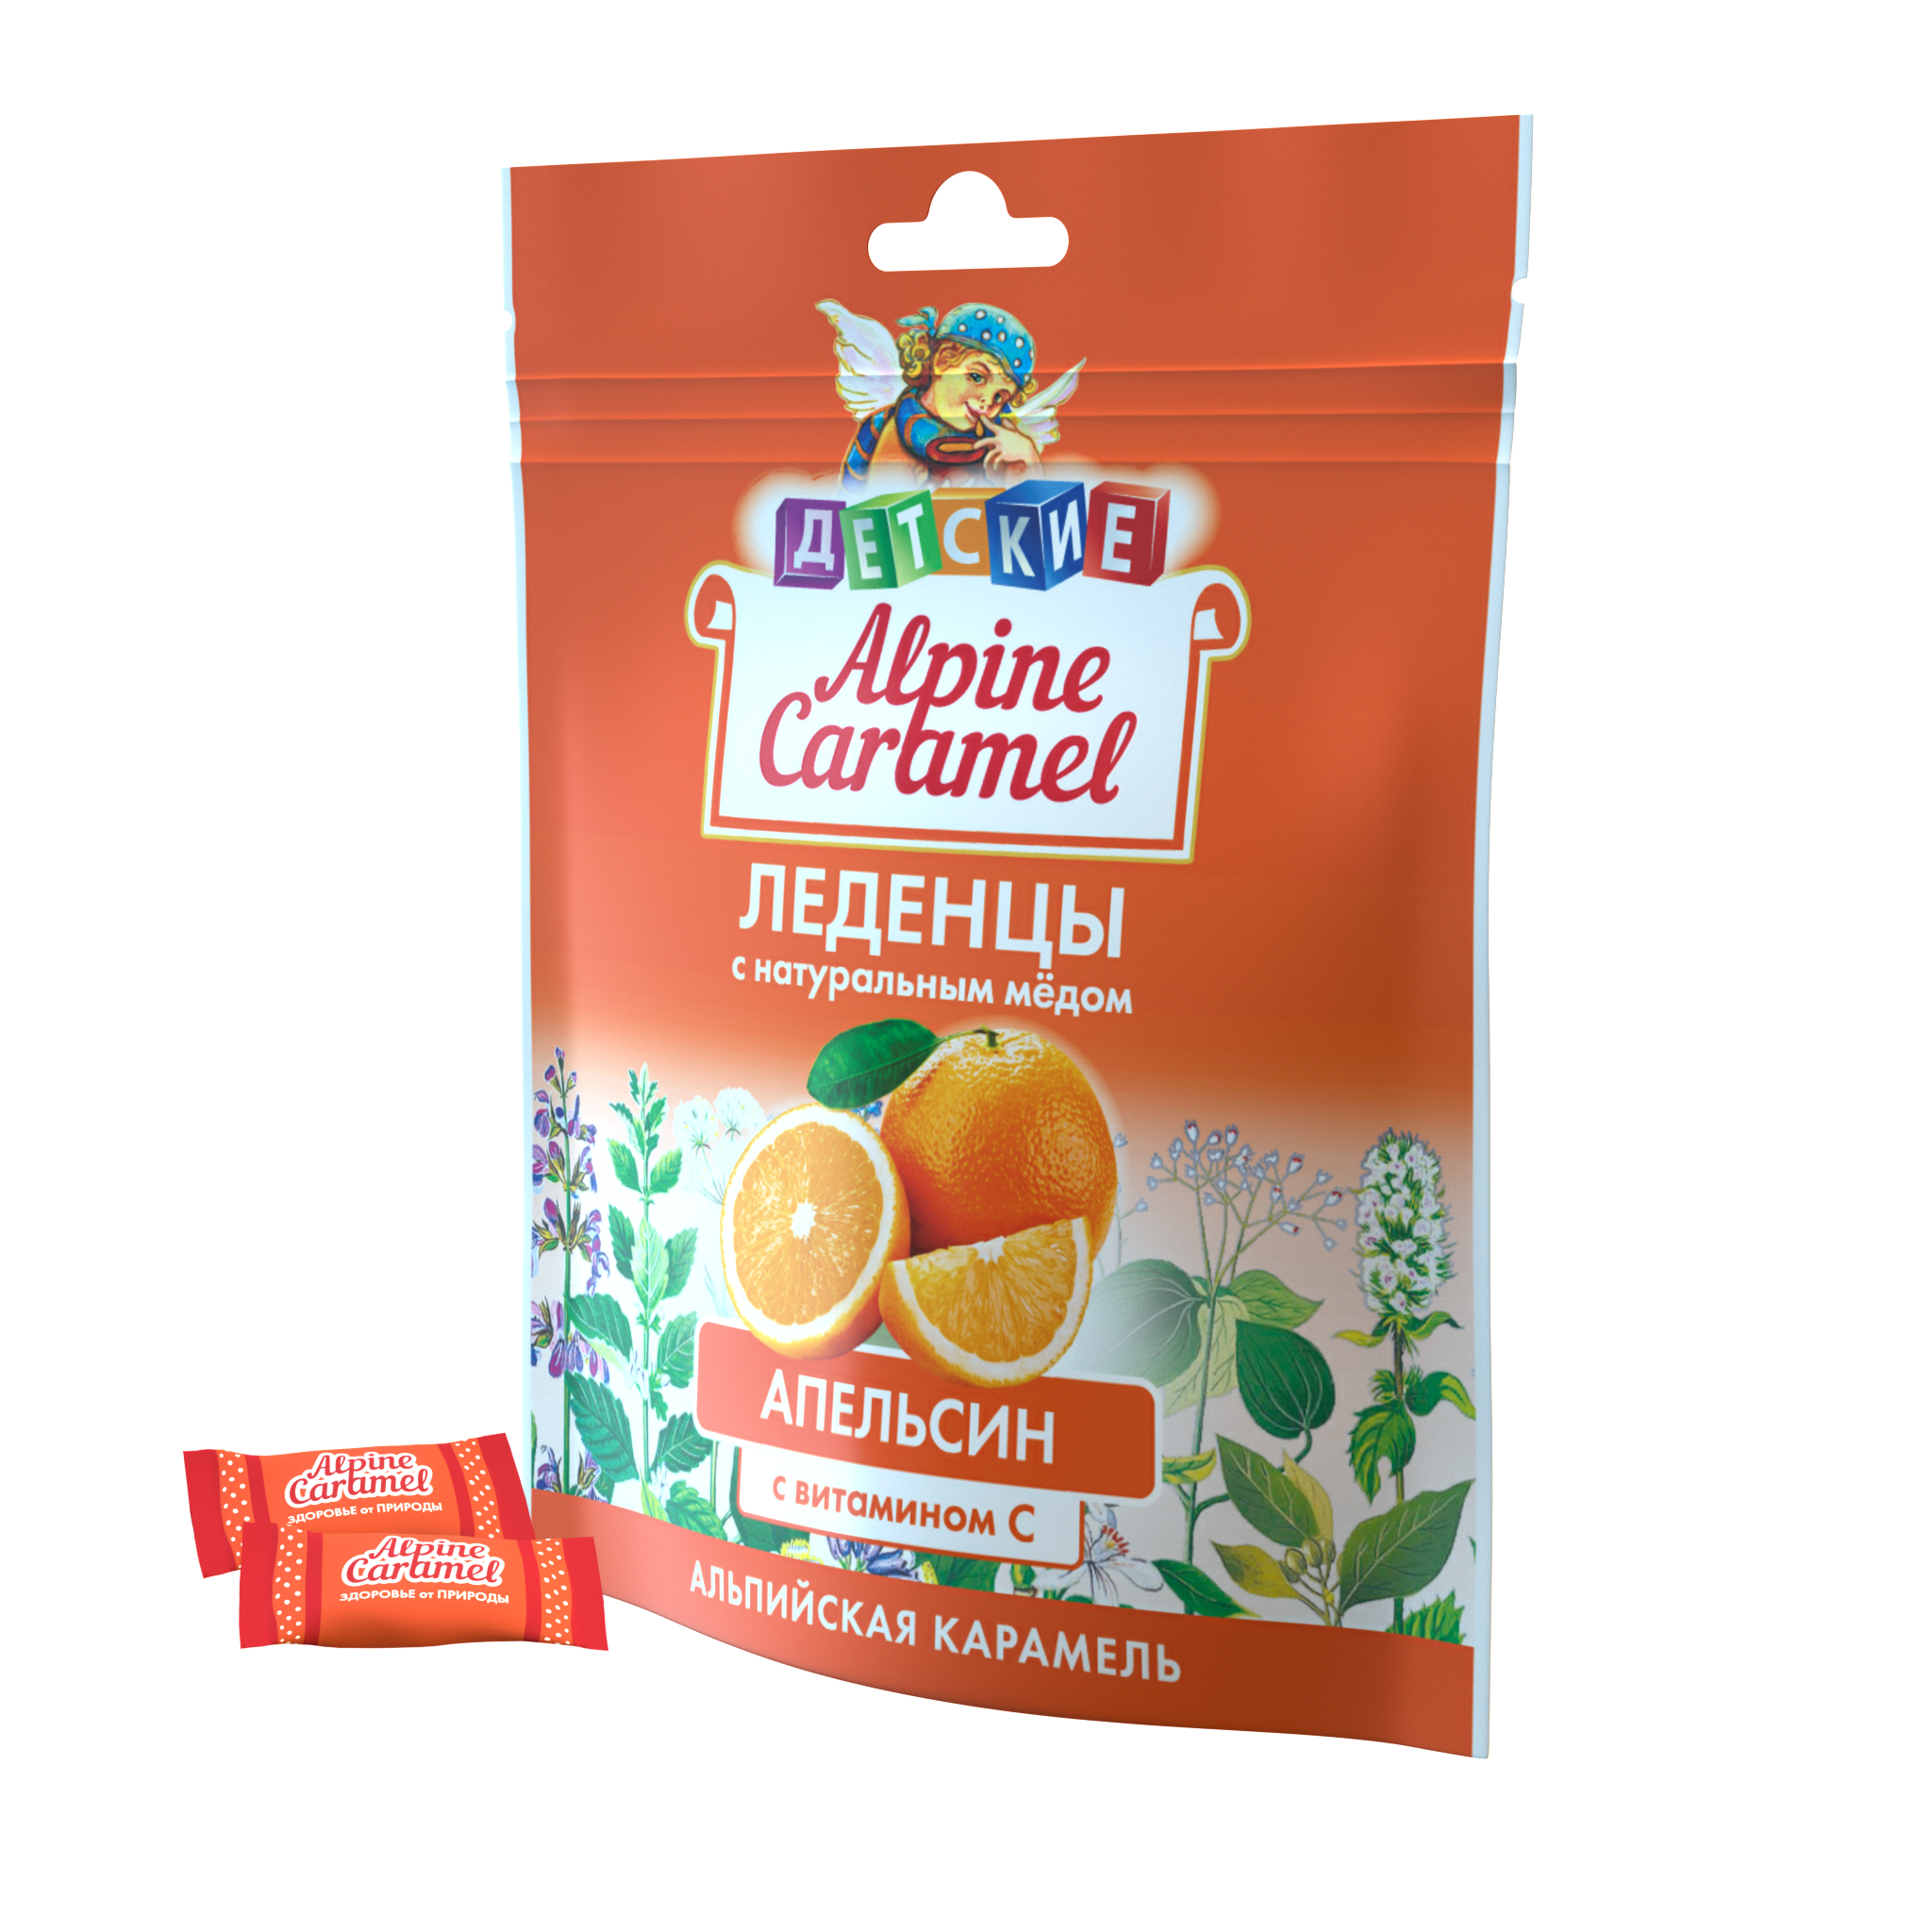 Alpine Caramel Альпийская Карамель леденцы дет (апельсин с медом и витамином С), 75 г ответы нашим крикам